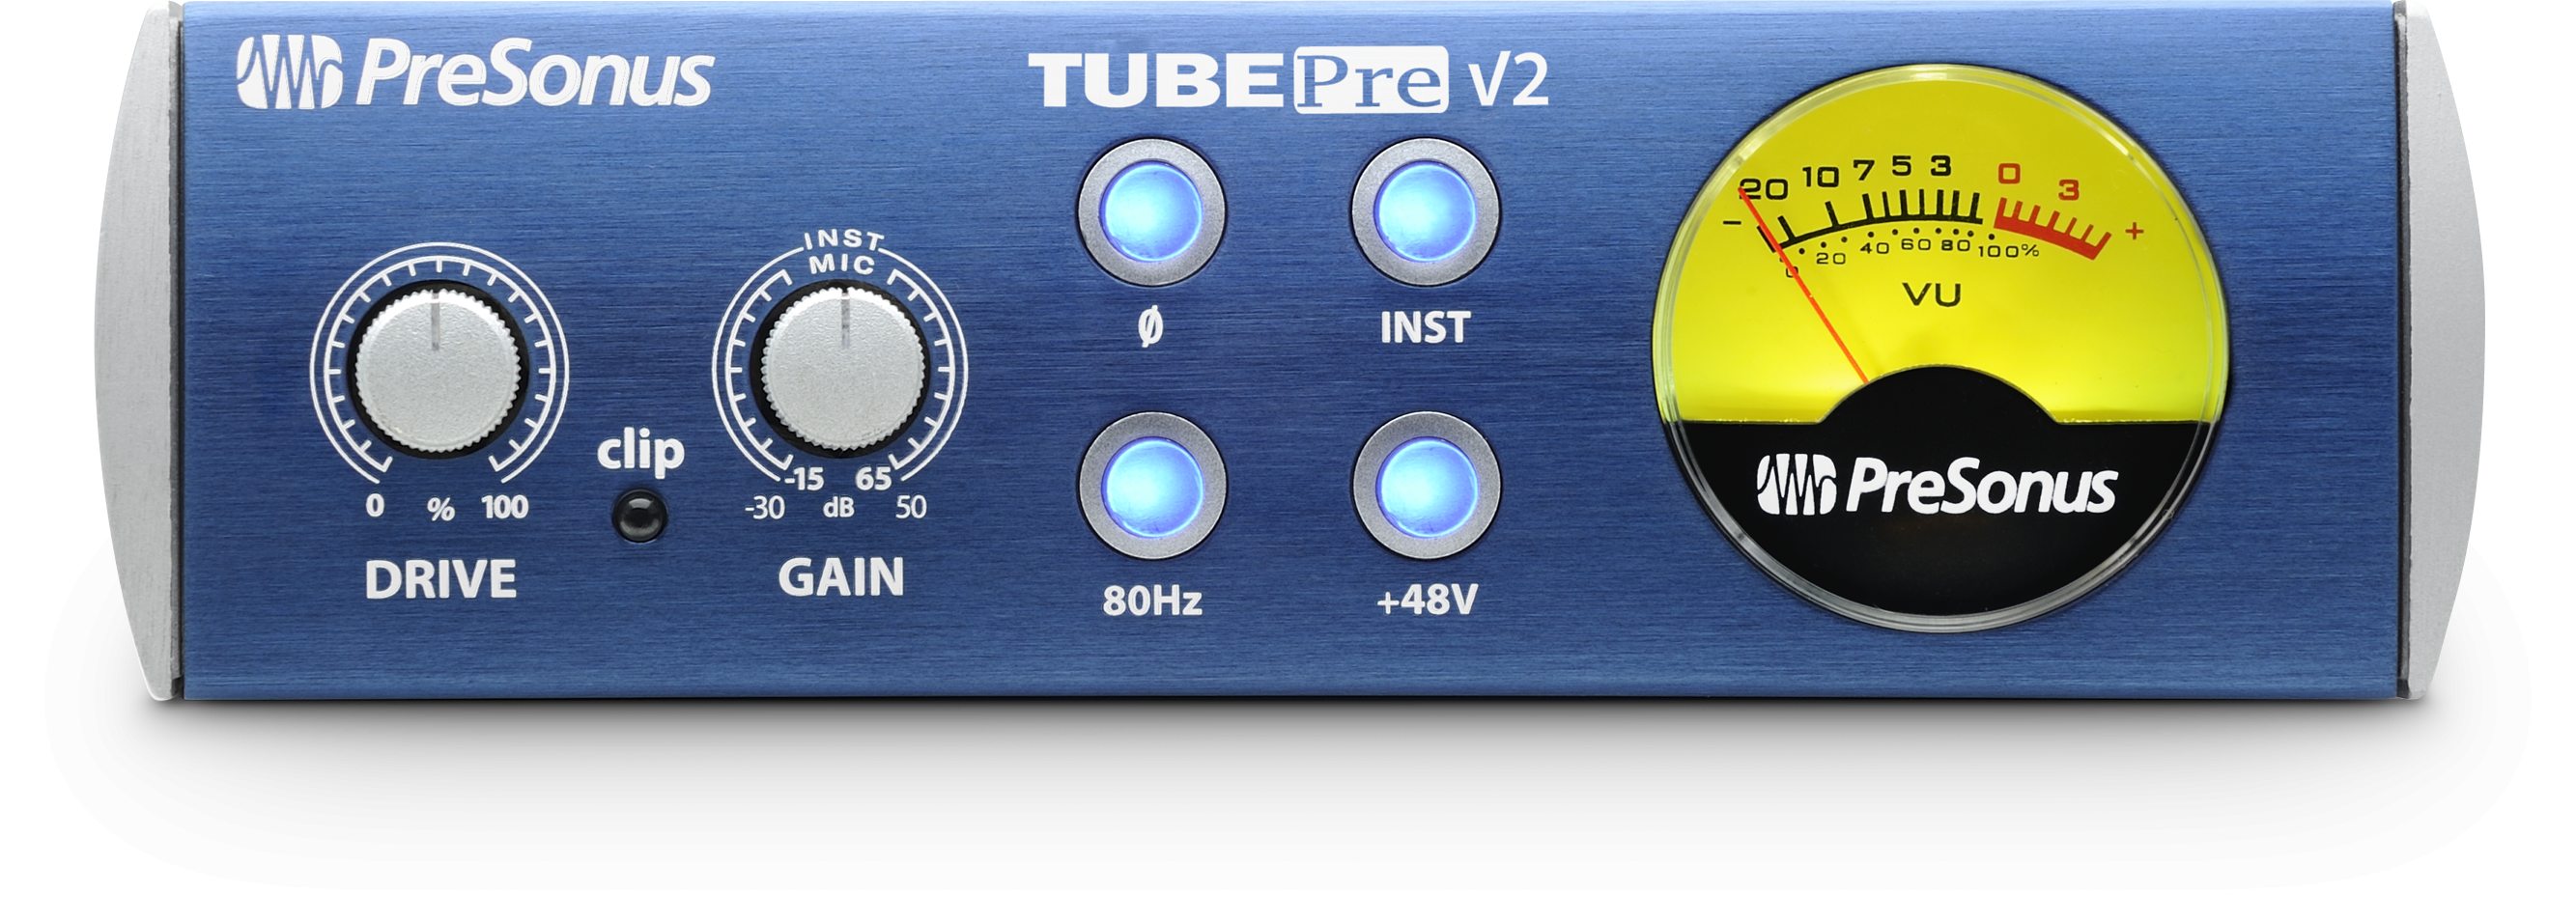 TubePre V2パネル画像